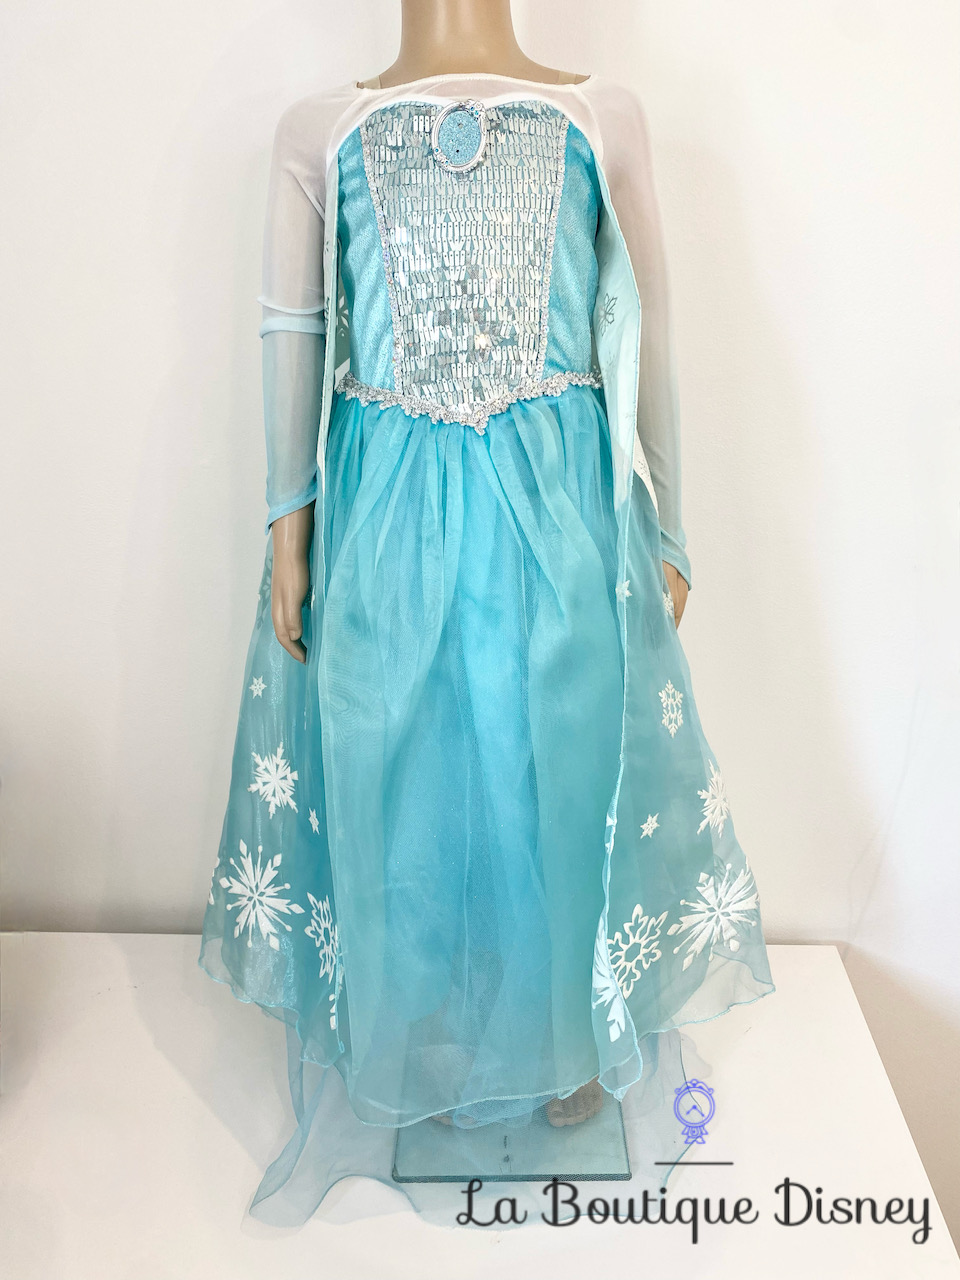 Déguisement Elsa La reine des neiges Disney Store taille 4 ans robe bleu cape strass